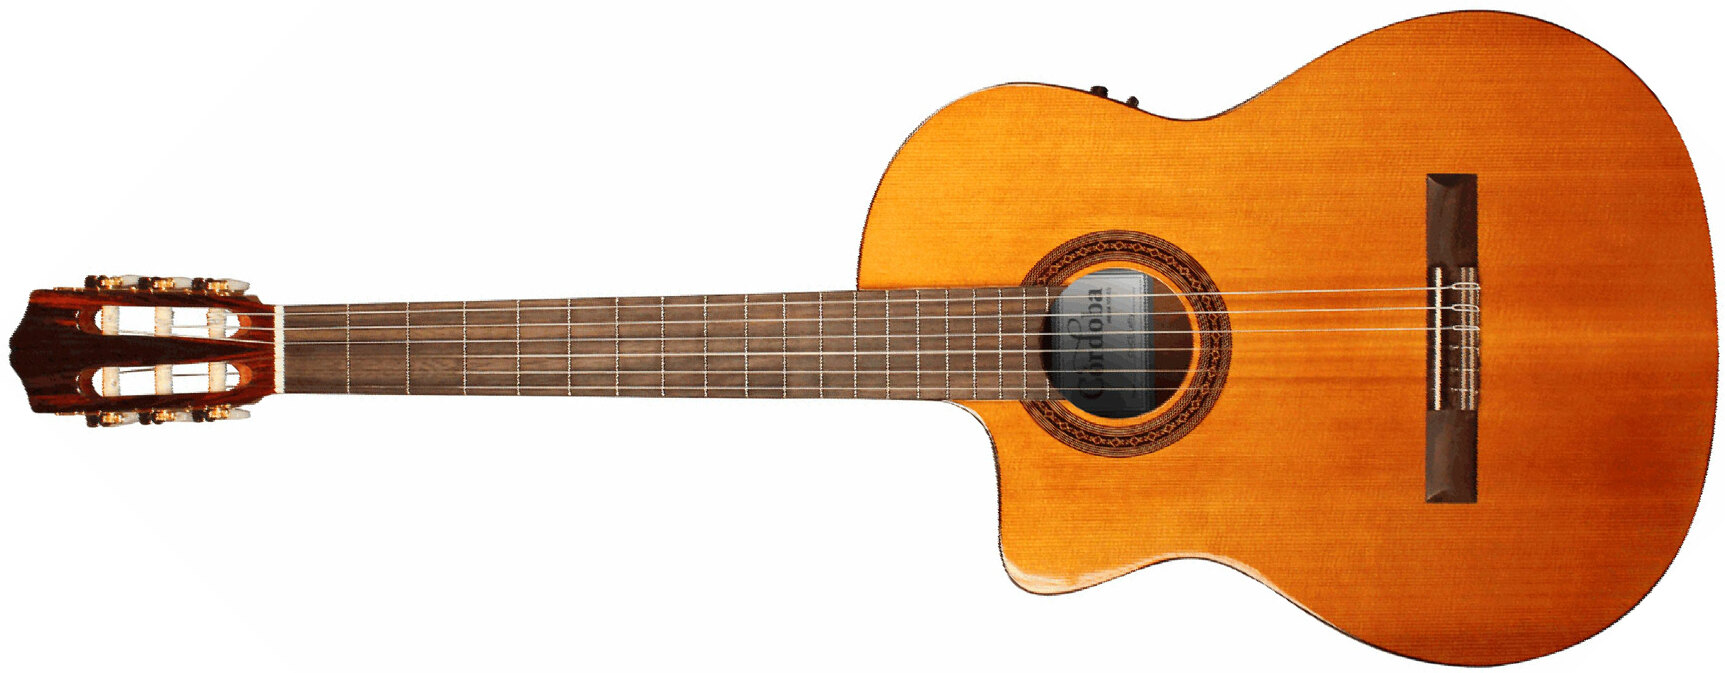 Cordoba C5-ce Iberia 4/4 Lh Gaucher Cw Cedre Acajou Rw - Natural - Classical guitar 4/4 size - Main picture